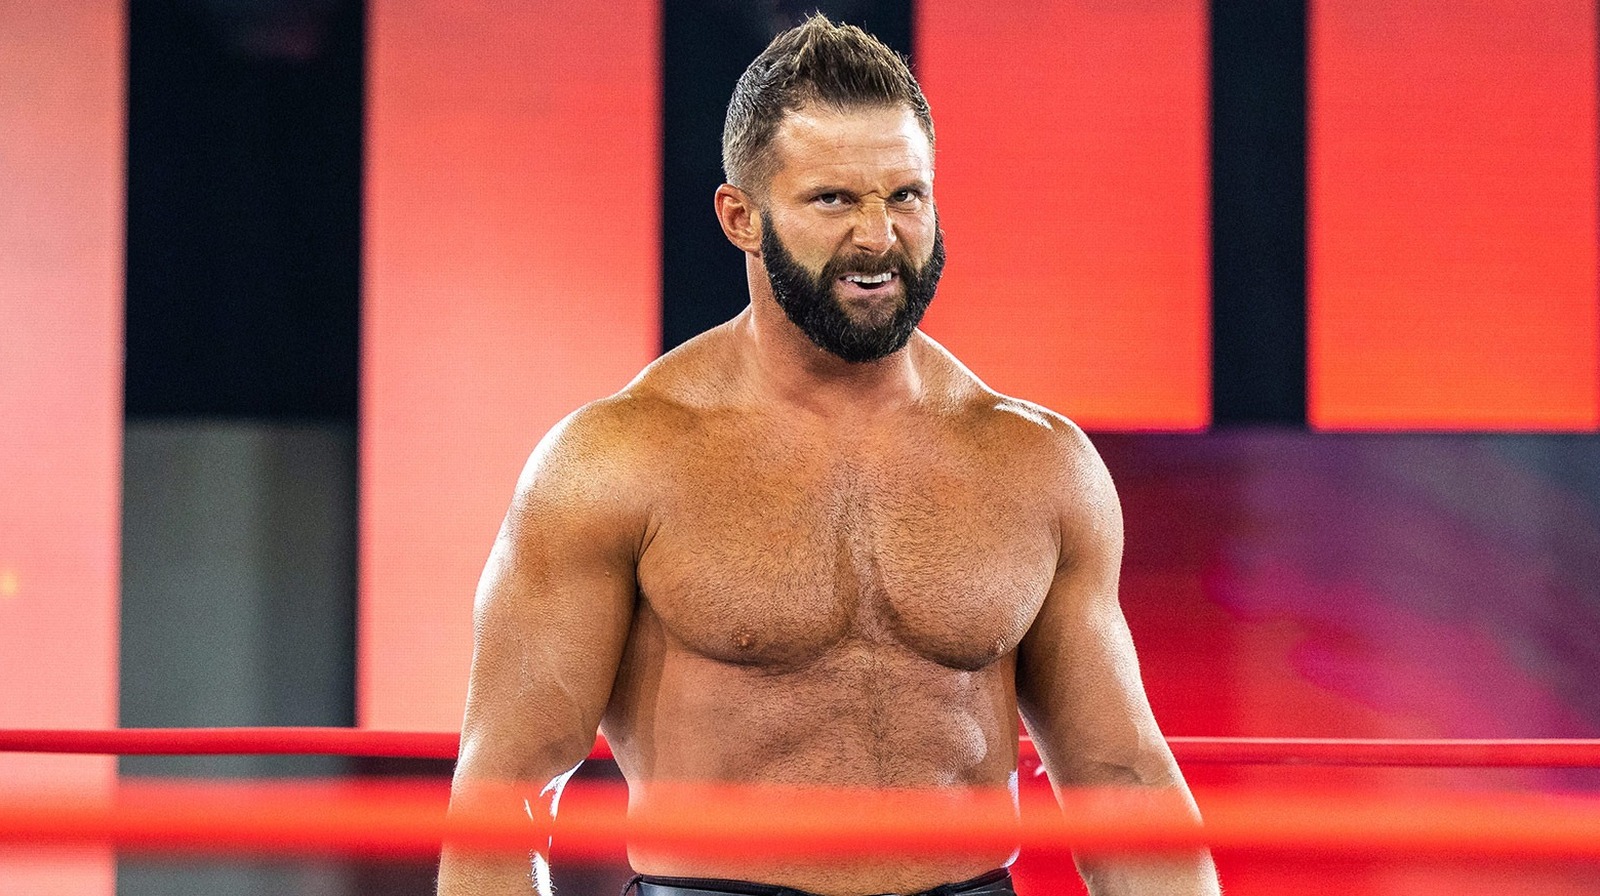 Matt Cardona da su opinión sobre cambiar el nombre de Impact Wrestling a TNA